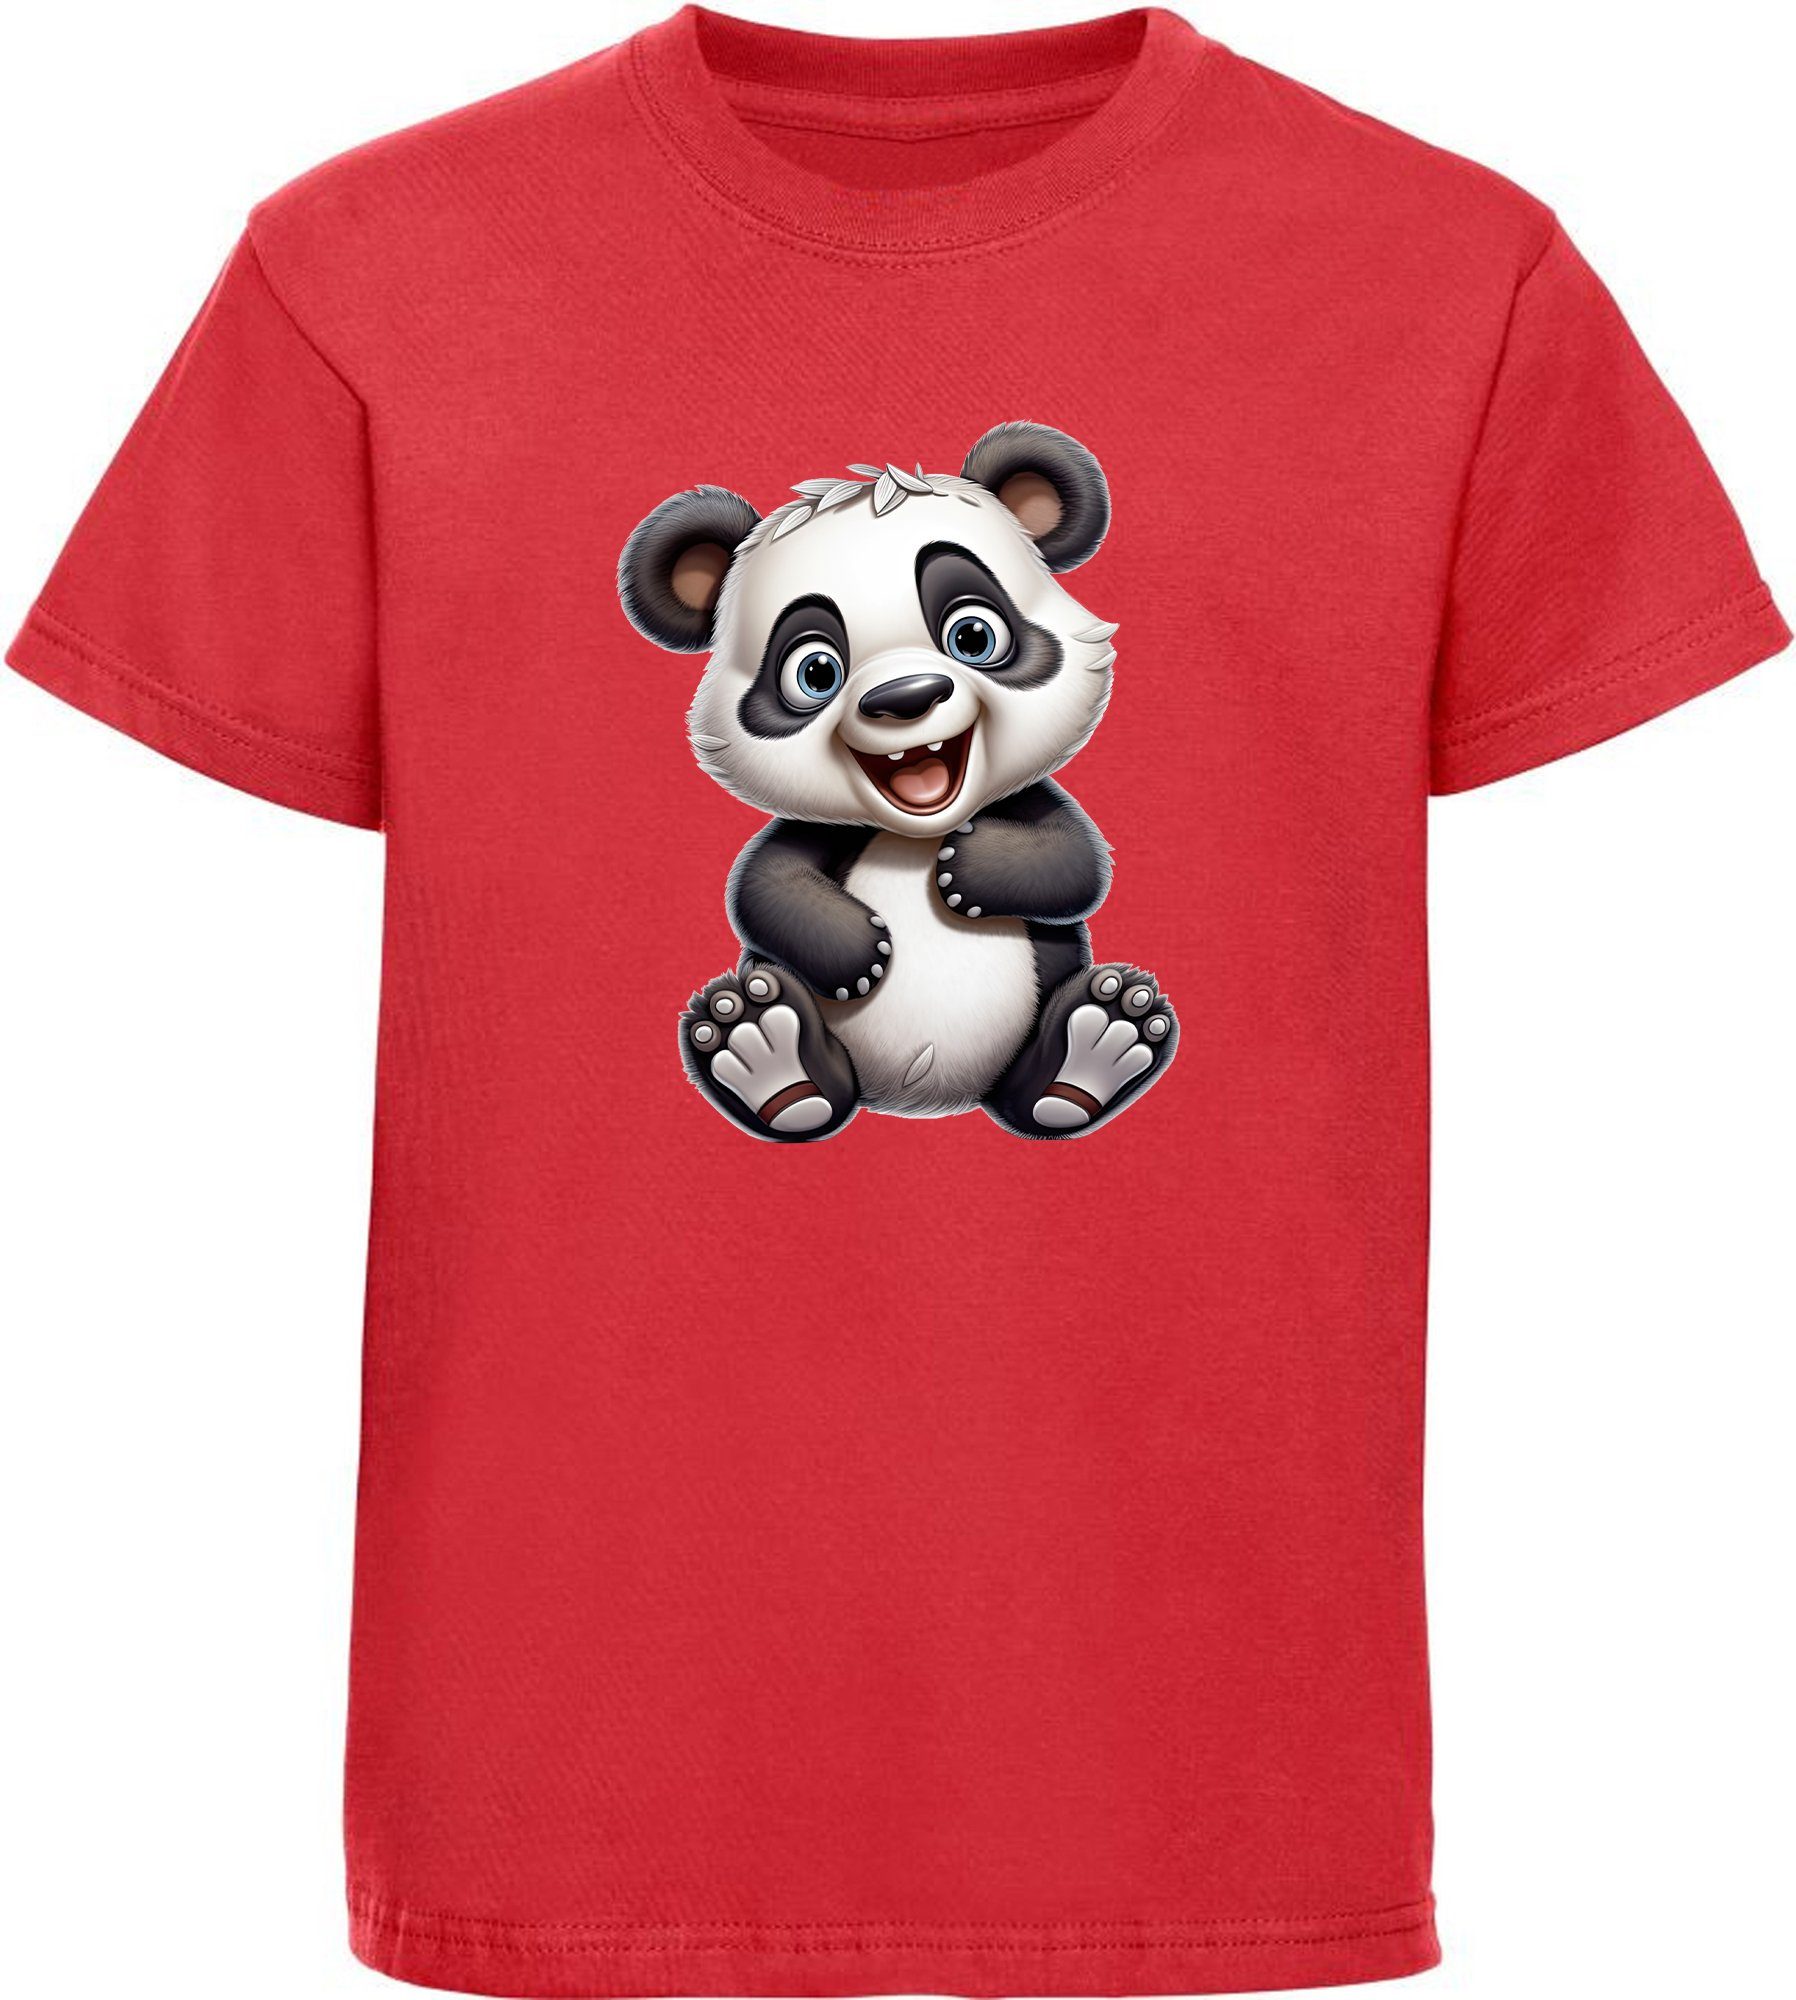 MyDesign24 T-Shirt Kinder Wildtier Print Shirt bedruckt - Baby Panda Bär Baumwollshirt mit Aufdruck, i277 rot